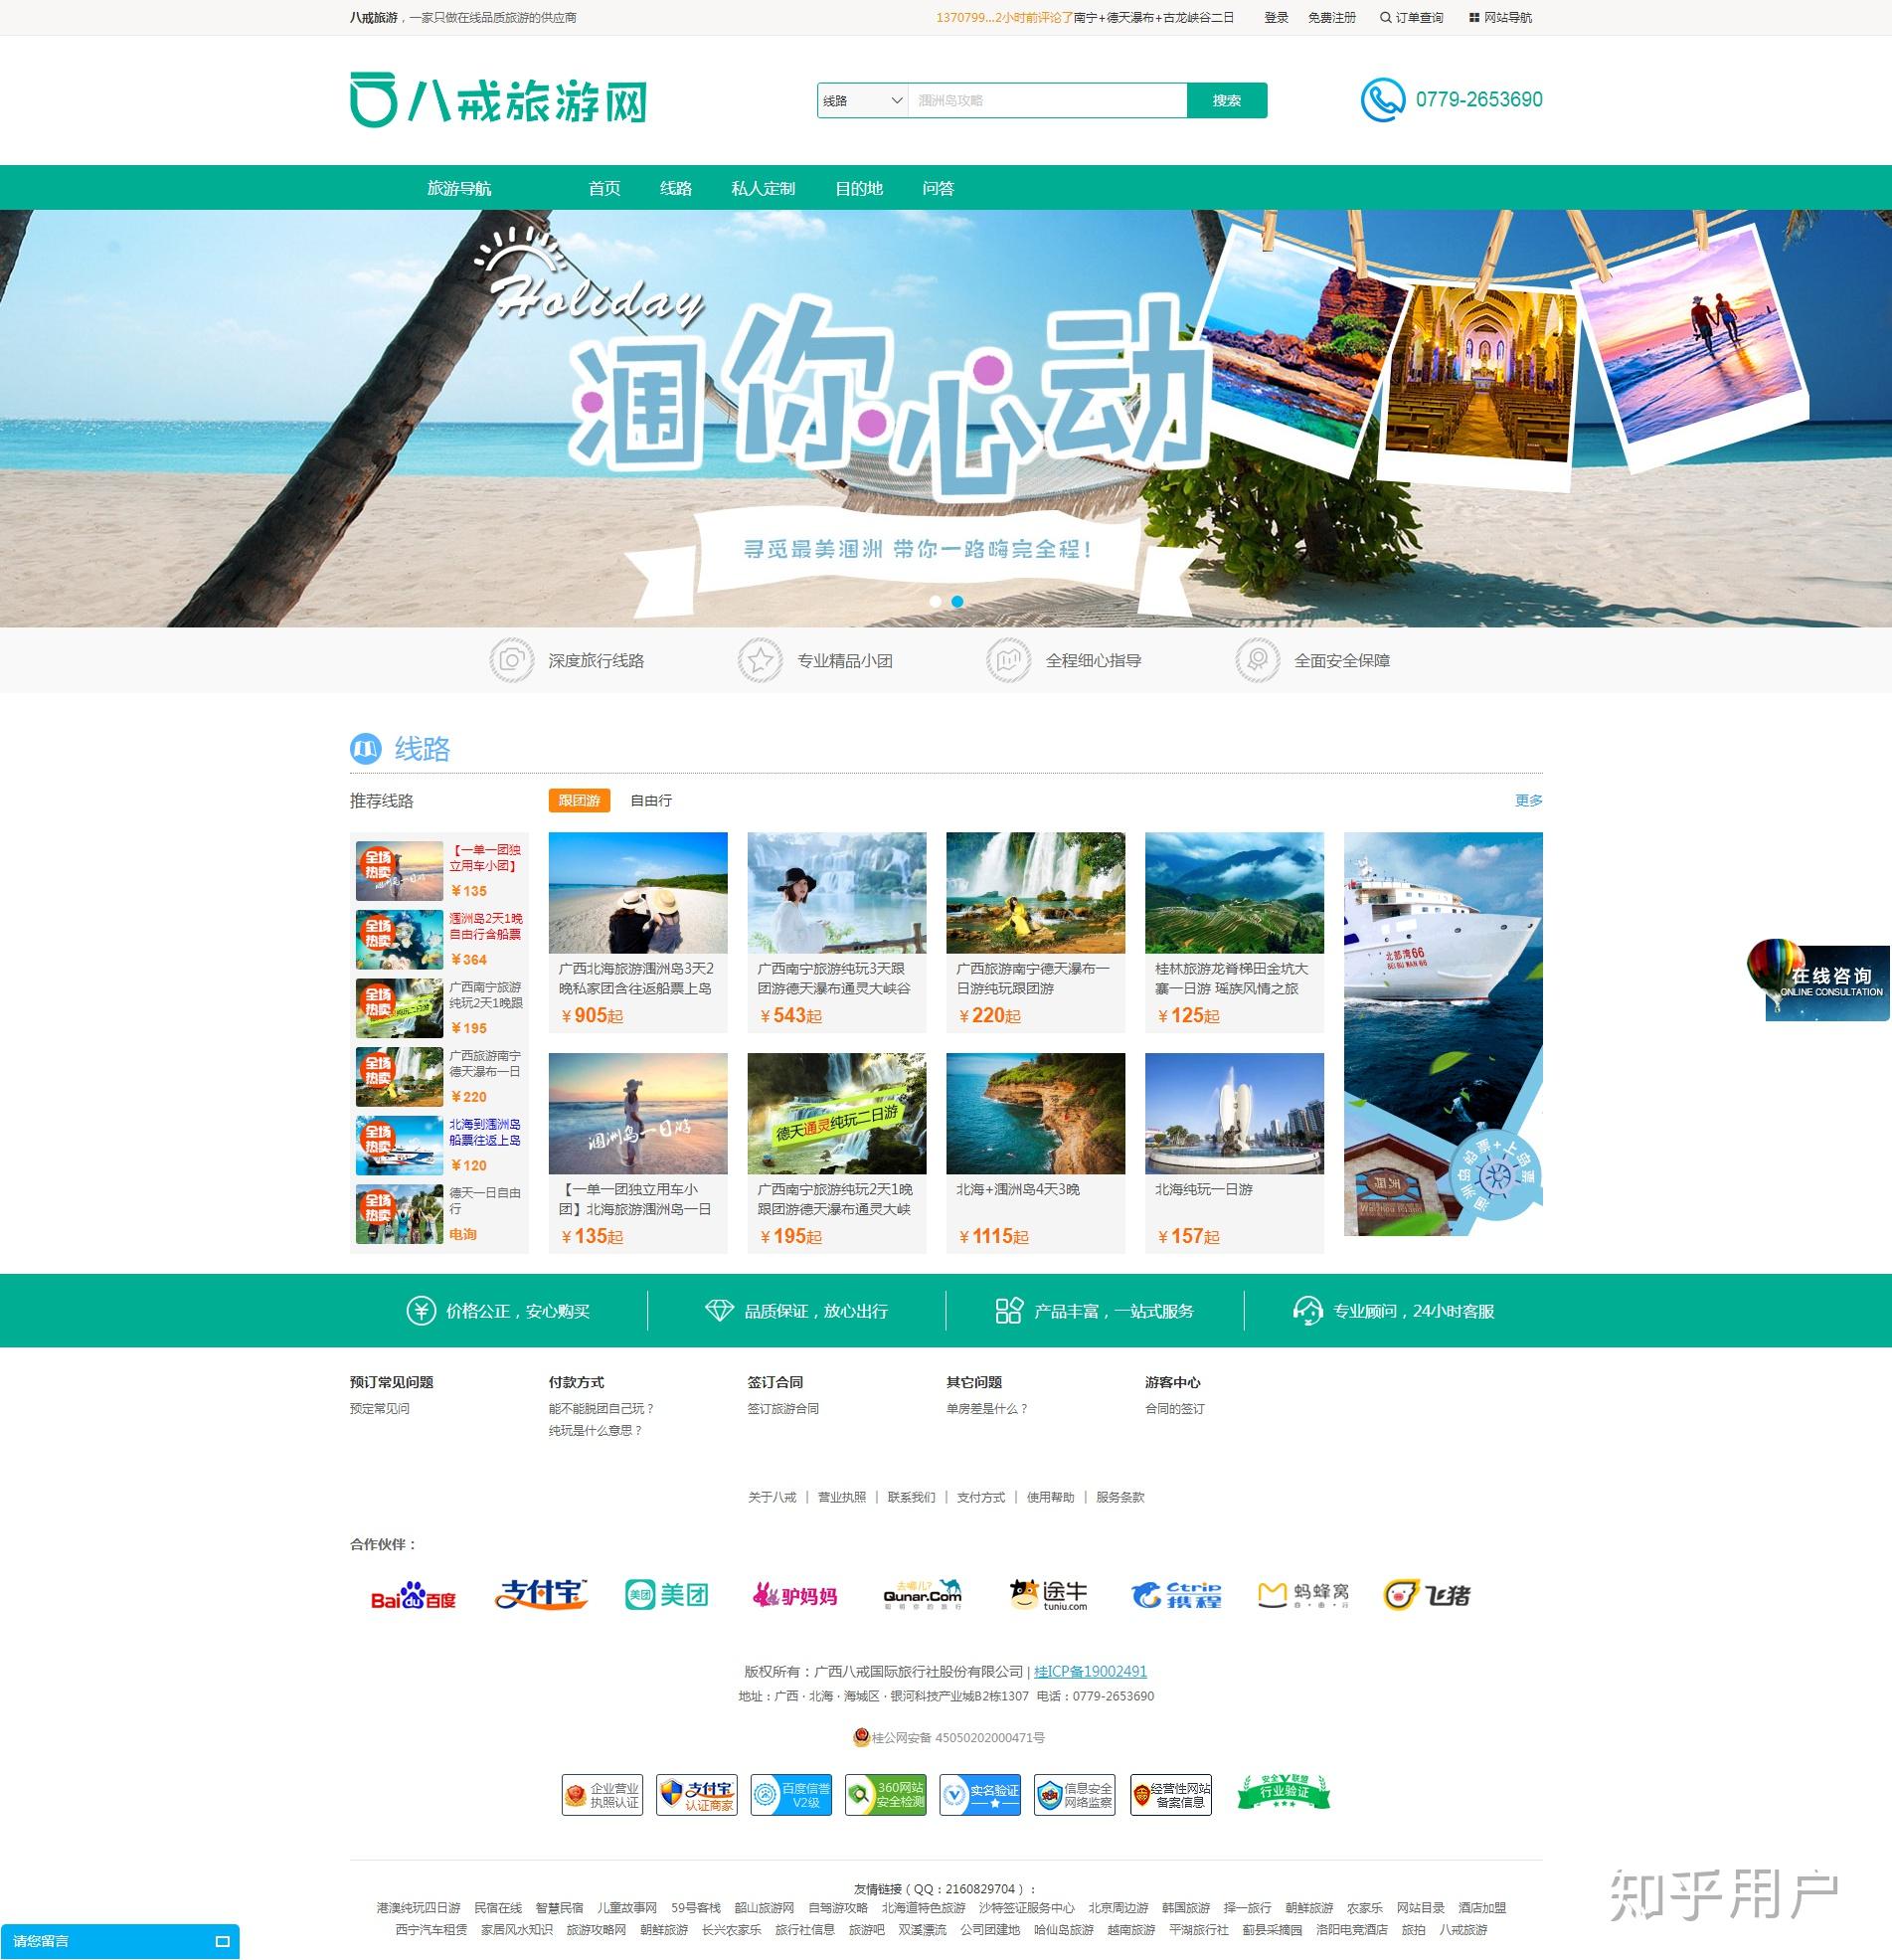 中国有哪些旅游私人定制的网站或app?